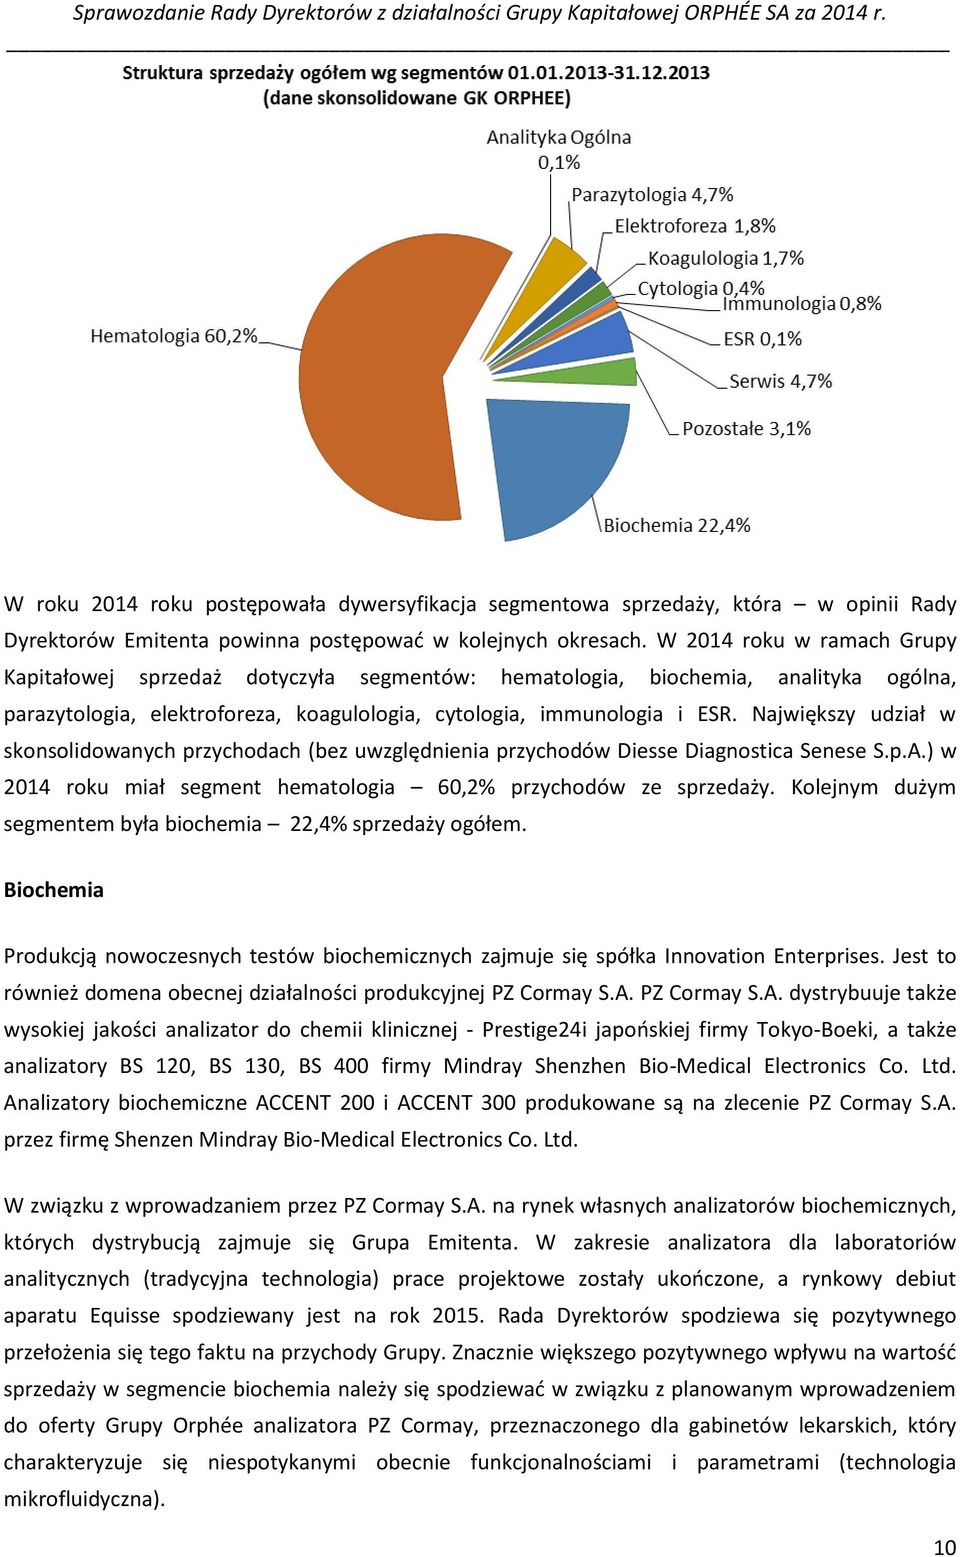 Największy udział w skonsolidowanych przychodach (bez uwzględnienia przychodów Diesse Diagnostica Senese S.p.A.) w 2014 roku miał segment hematologia 60,2% przychodów ze sprzedaży.